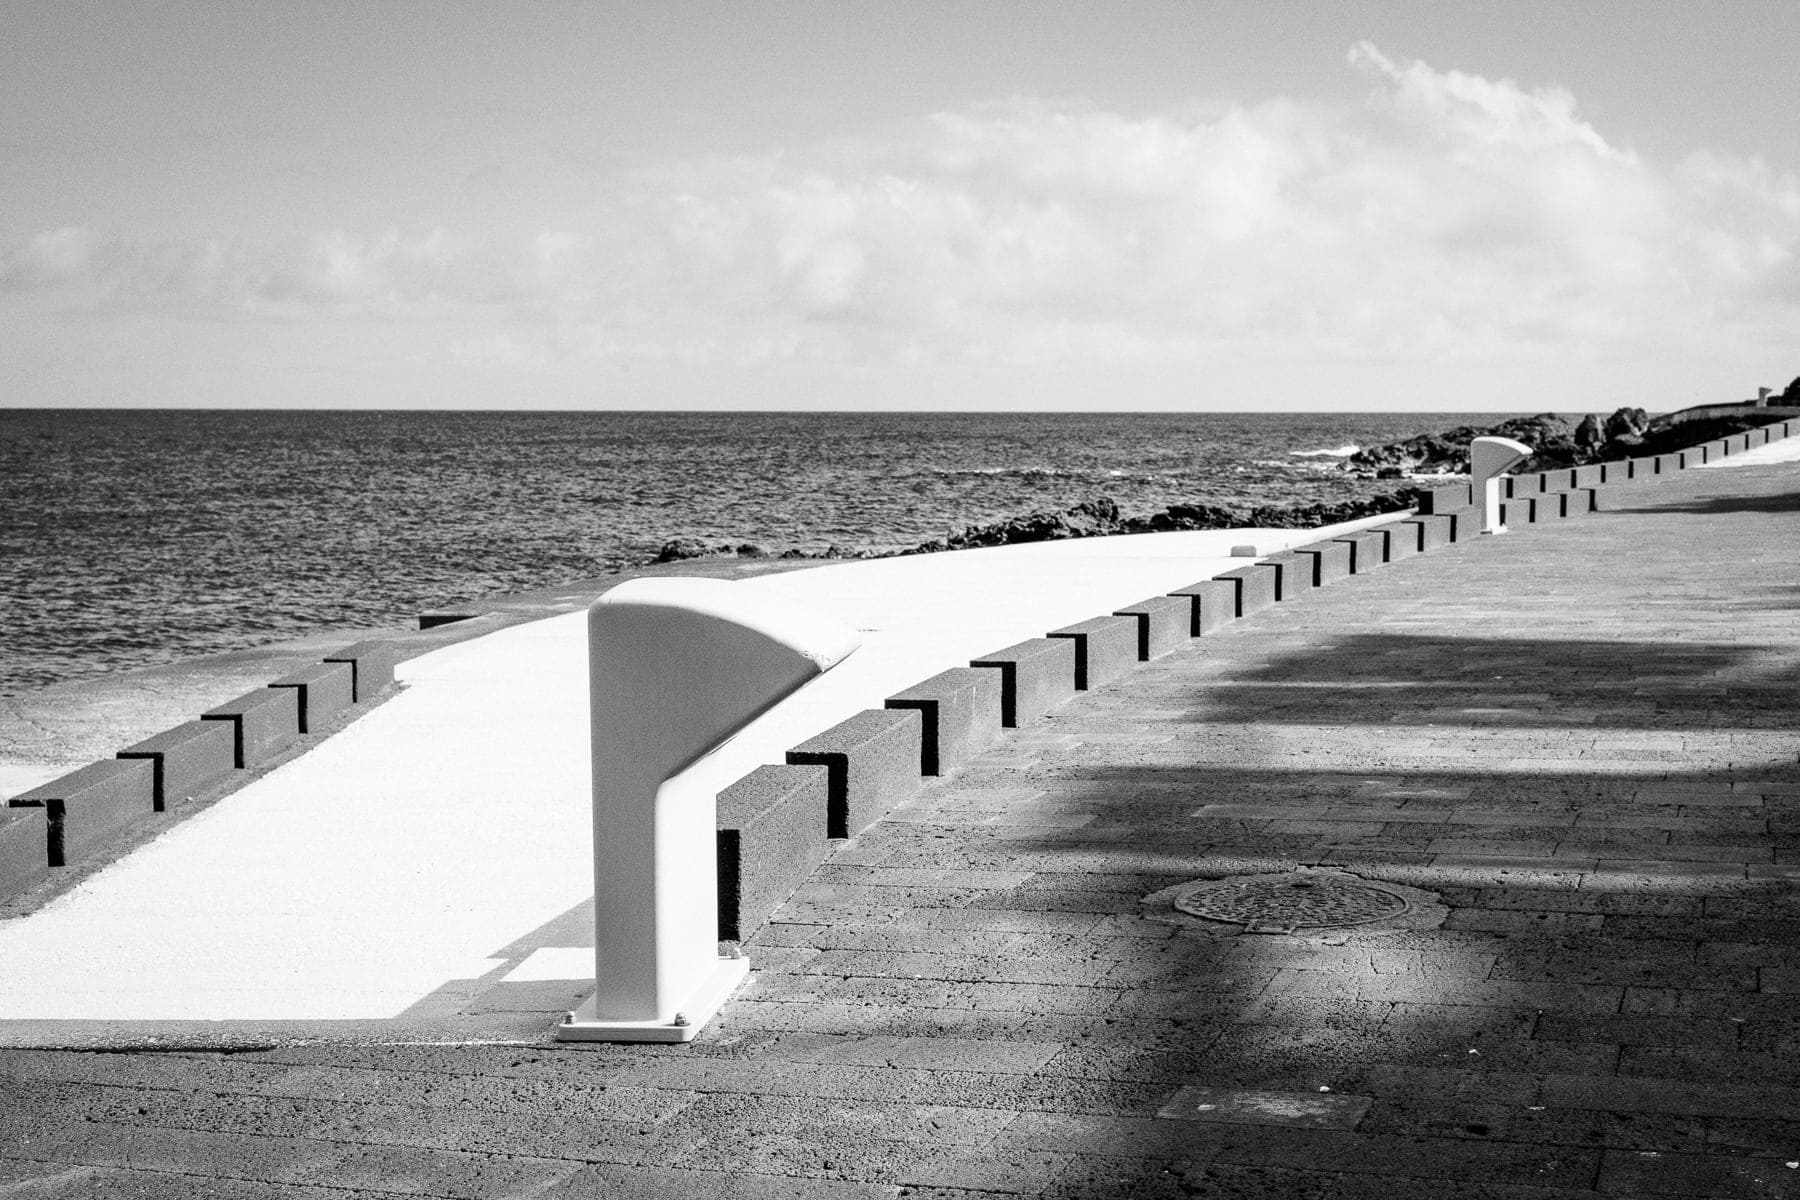 Europe, Italie, Leica M10, Noir et blanc, Pantelleria